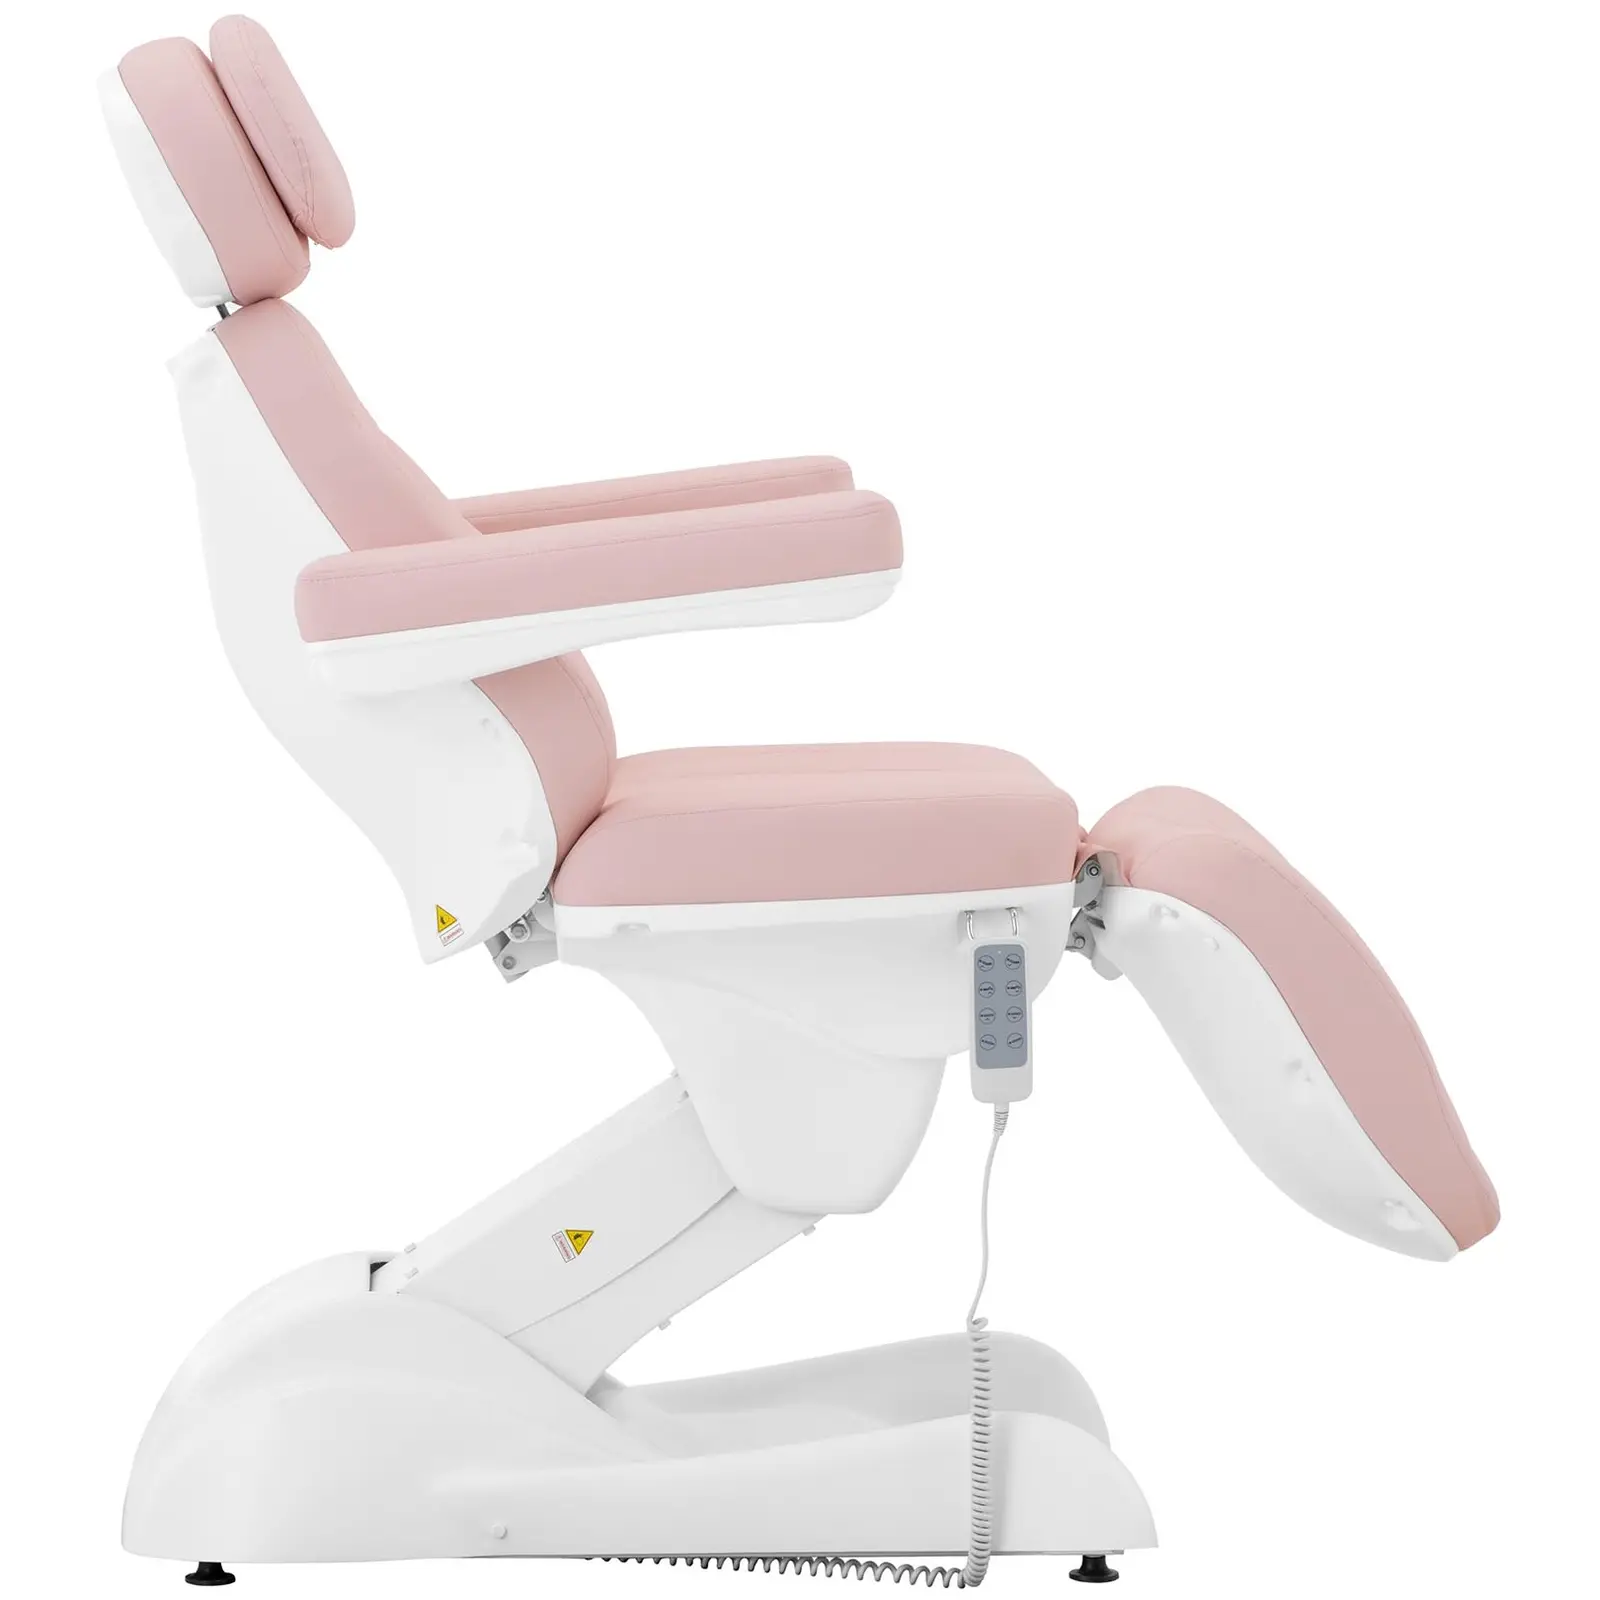 Fotel kosmetyczny - 200 W - 150 kg - różowy, biały